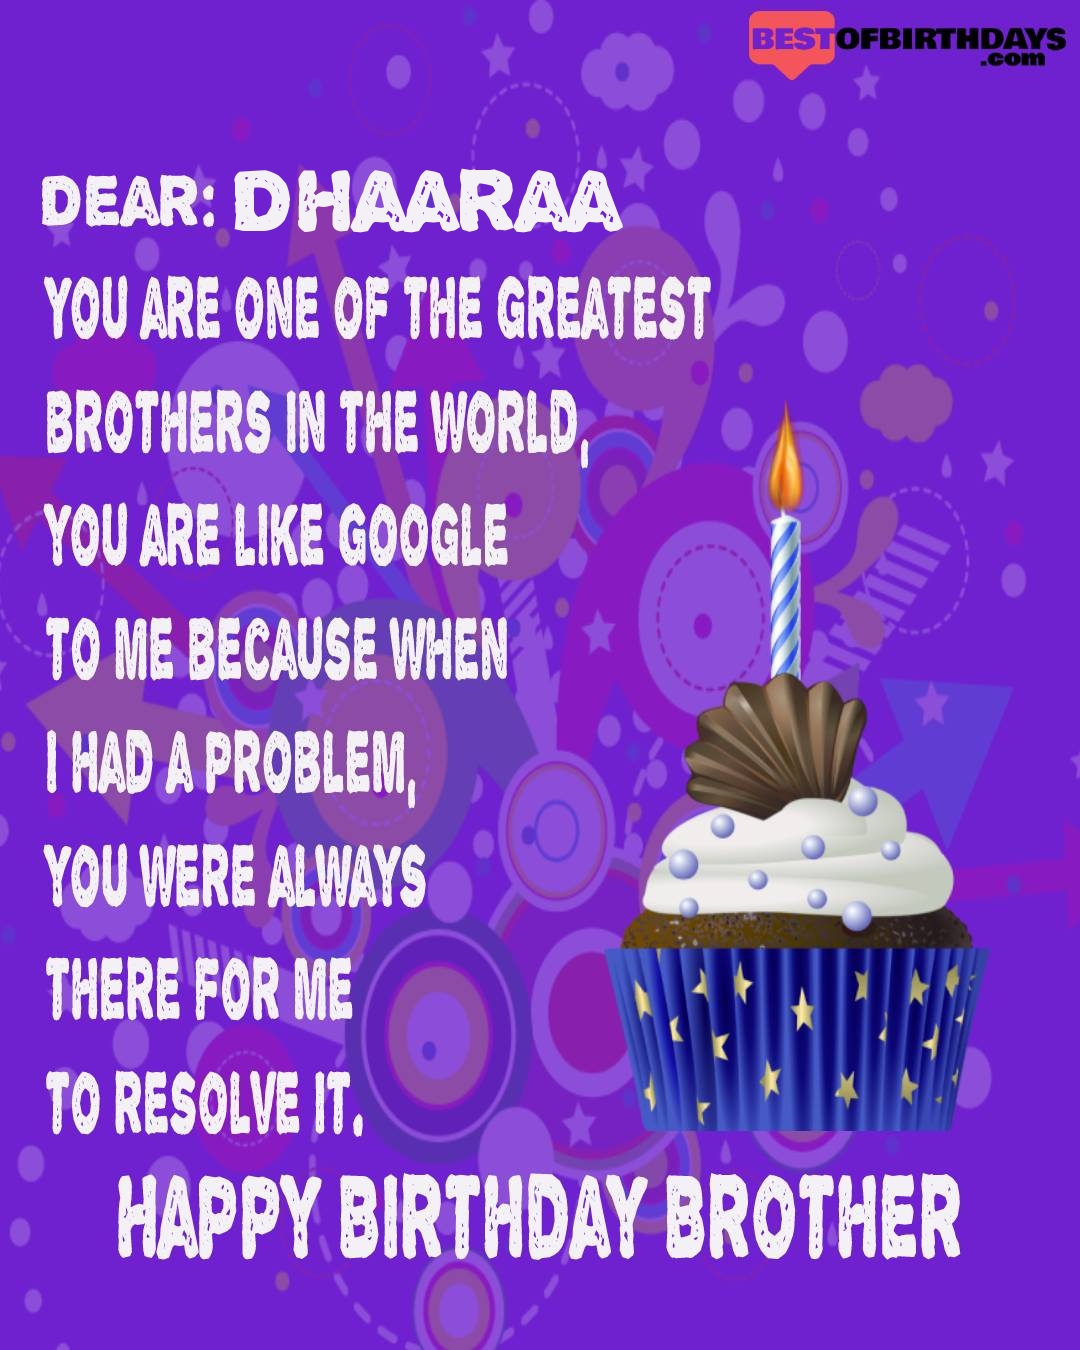 Happy birthday dhaaraa bhai brother bro